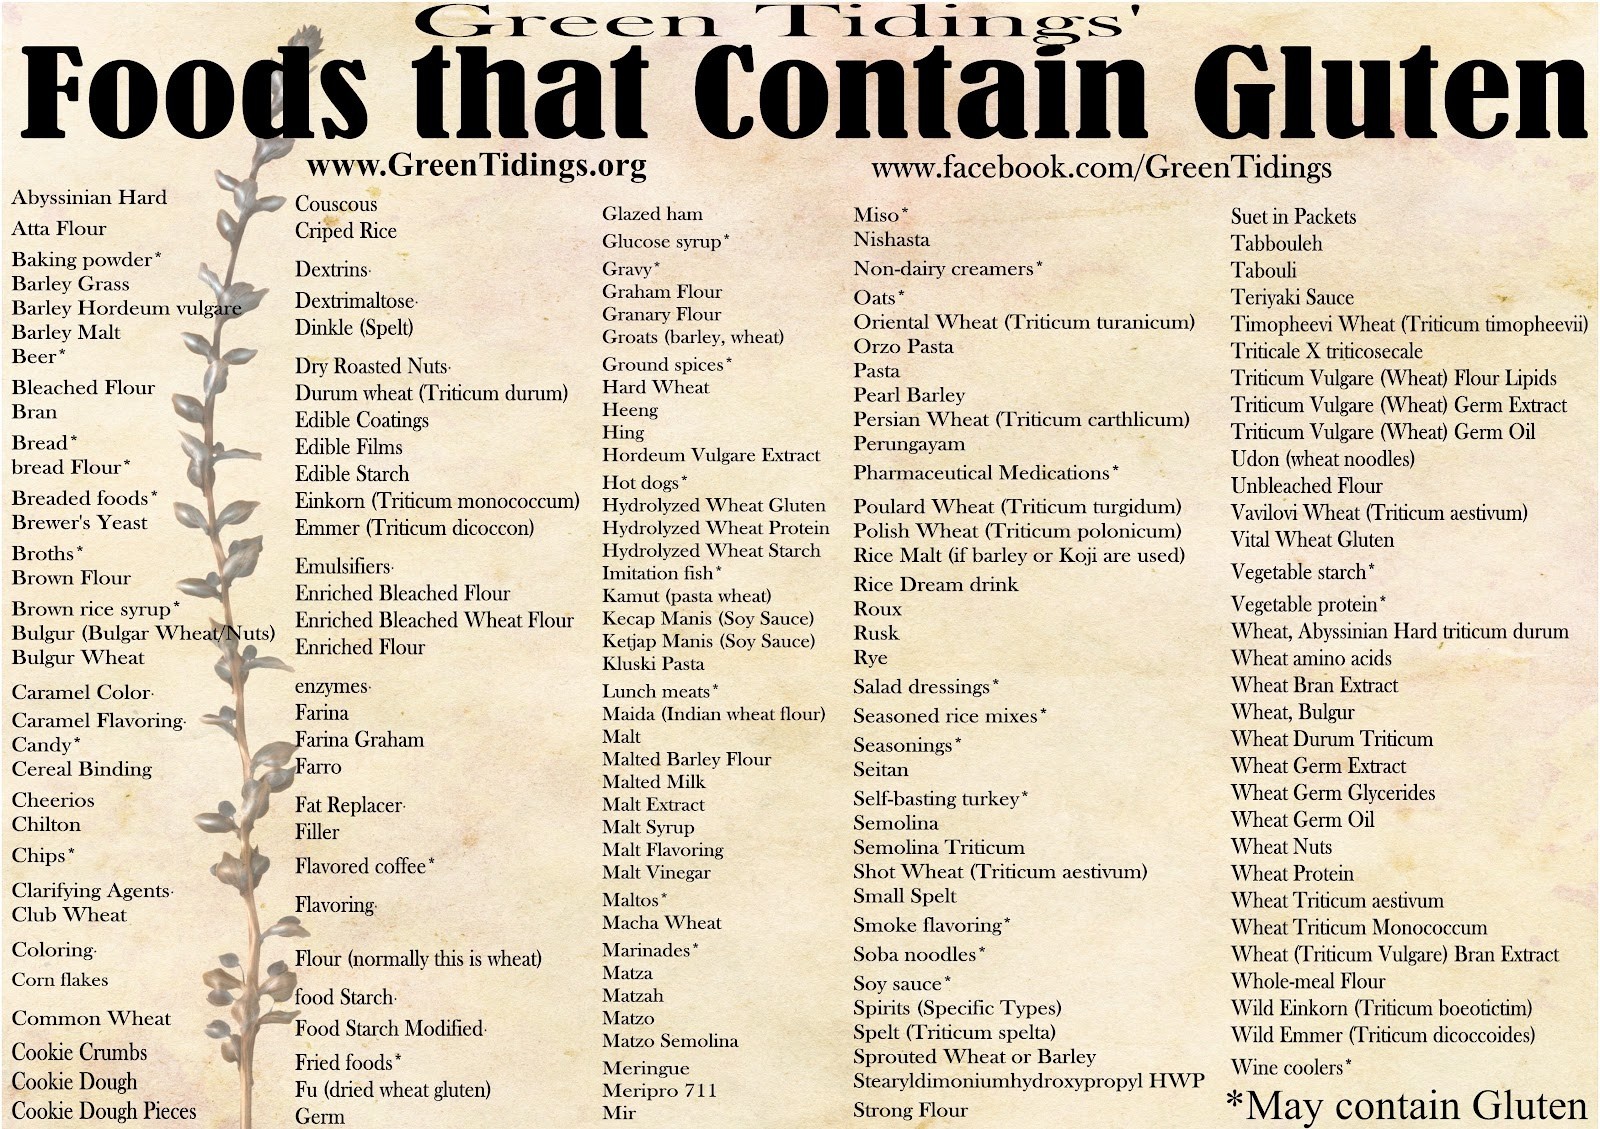 Gluten Free Food List Printable Free Printable